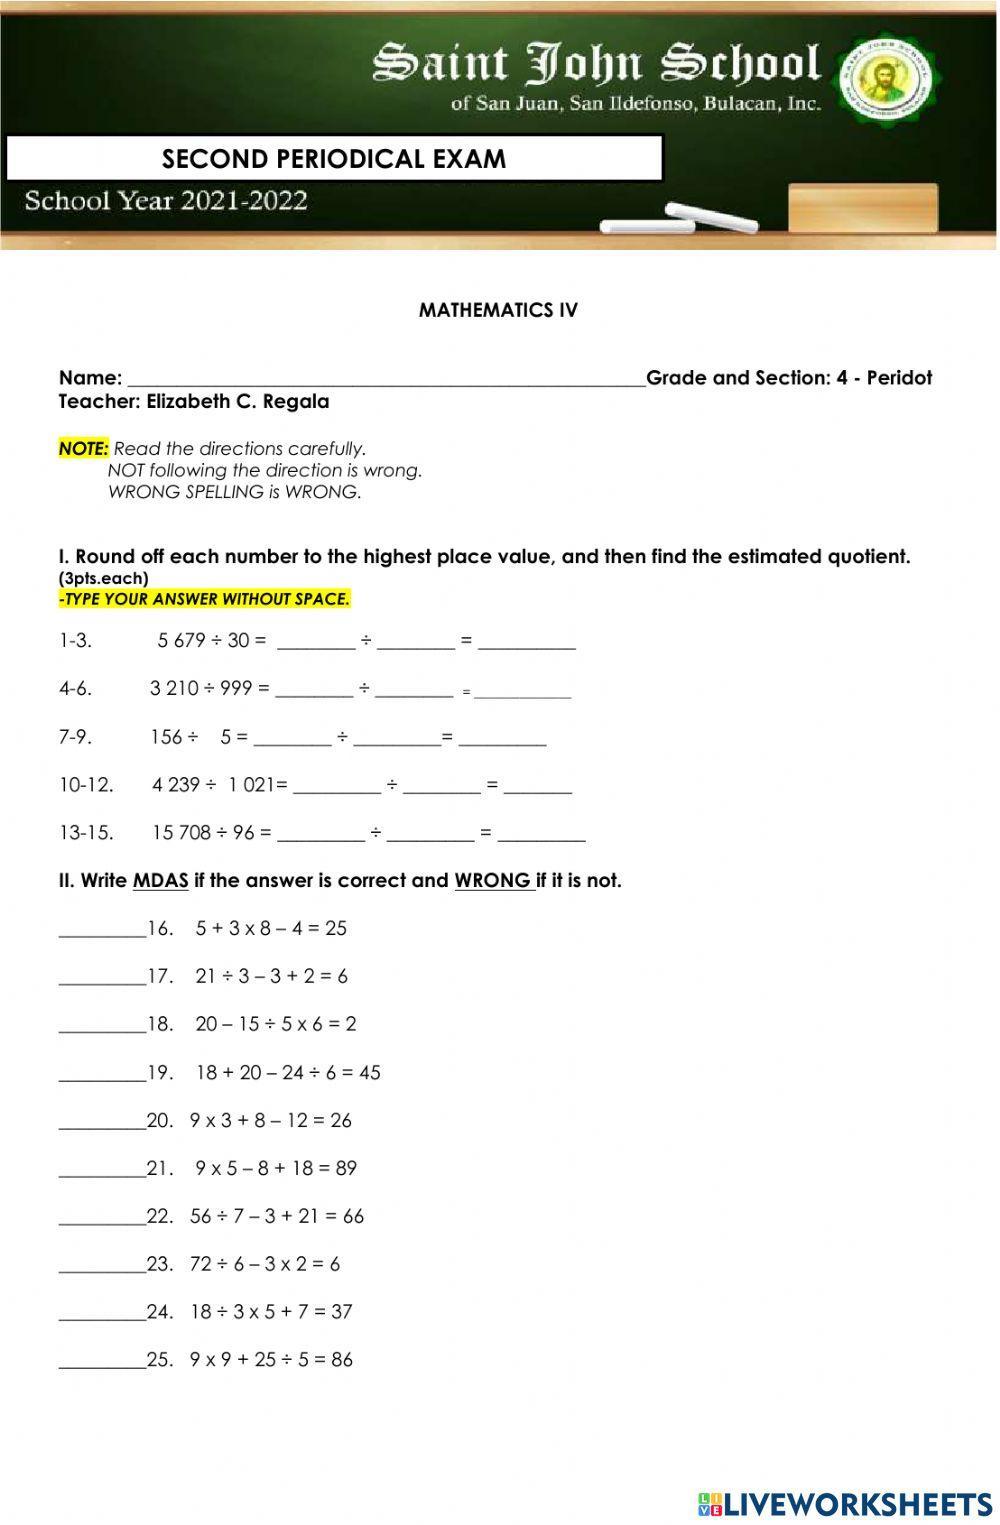 Mathematics 4 - 2nd Periodical Exam